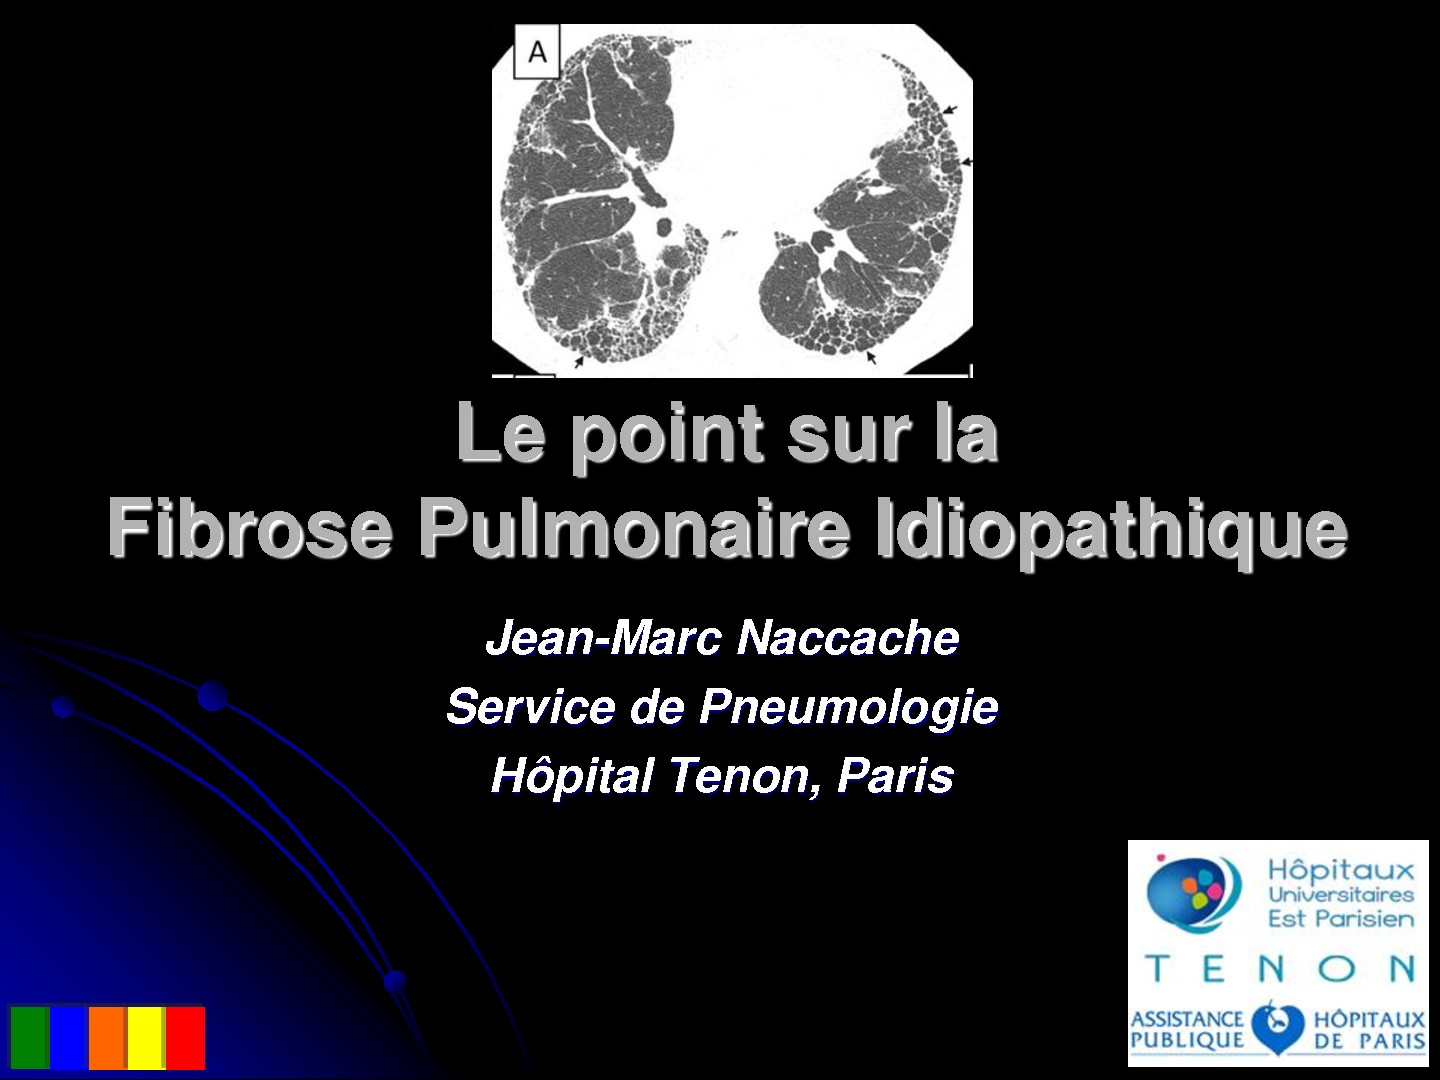 Le point sur la Fibrose Pulmonaire Idiopathique. Jean-Marc Naccache